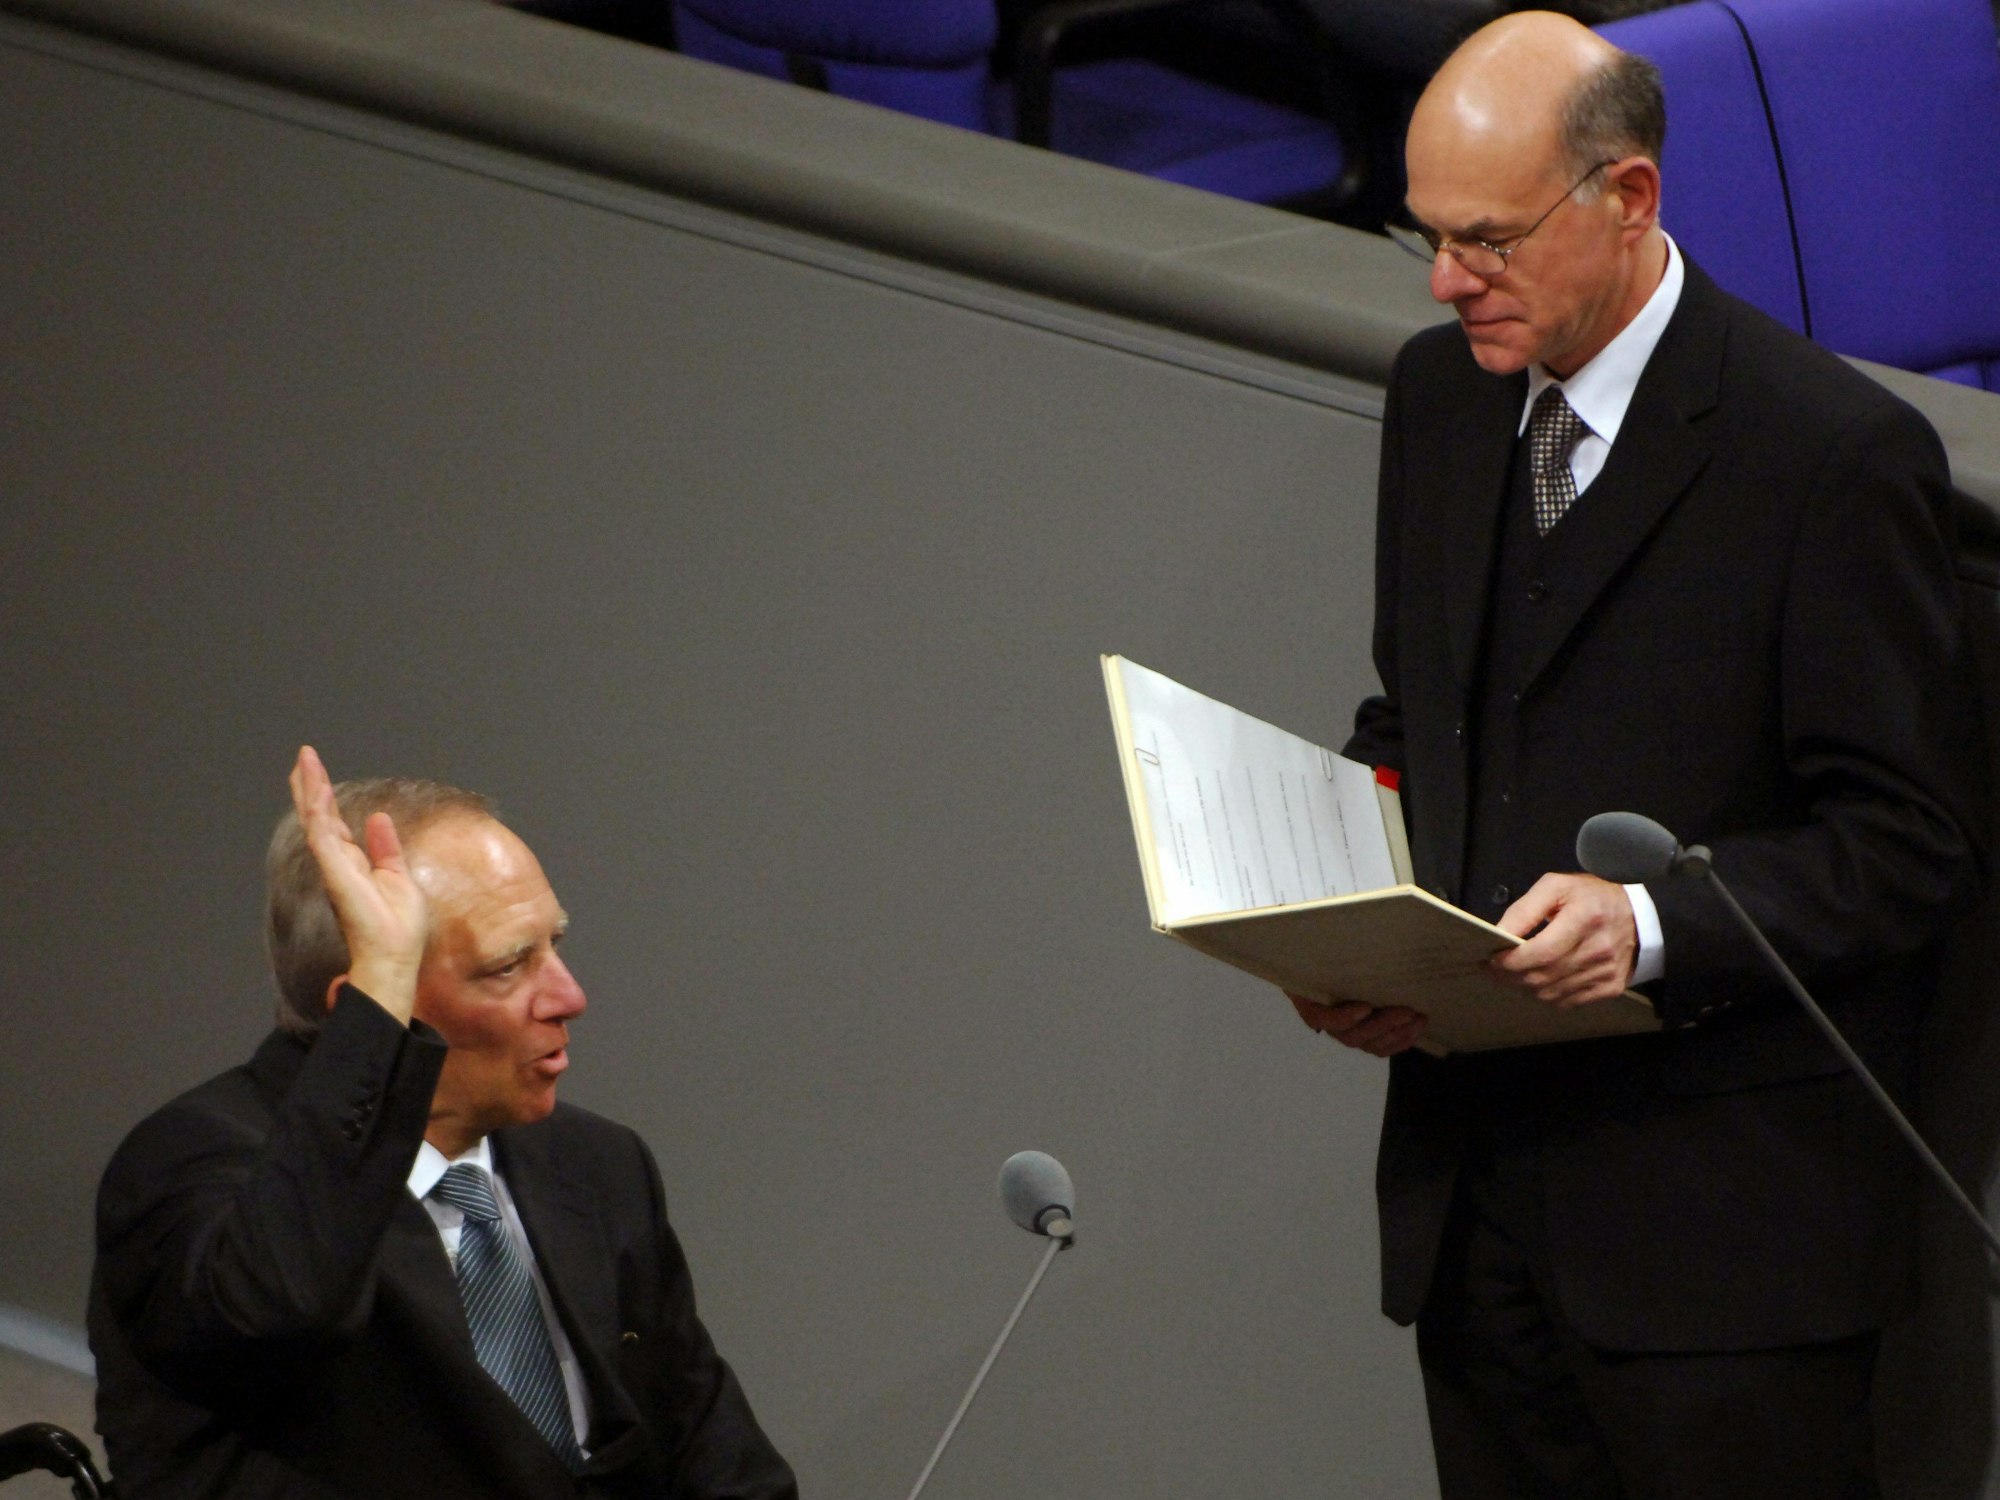 22.11.2005, Berlin: Der damalige Innenminister Wolfgang Schäuble legt im Bundestag vor dem damaligen Bundestagspräsidenten Norbert Lammert den Amtseid ab.